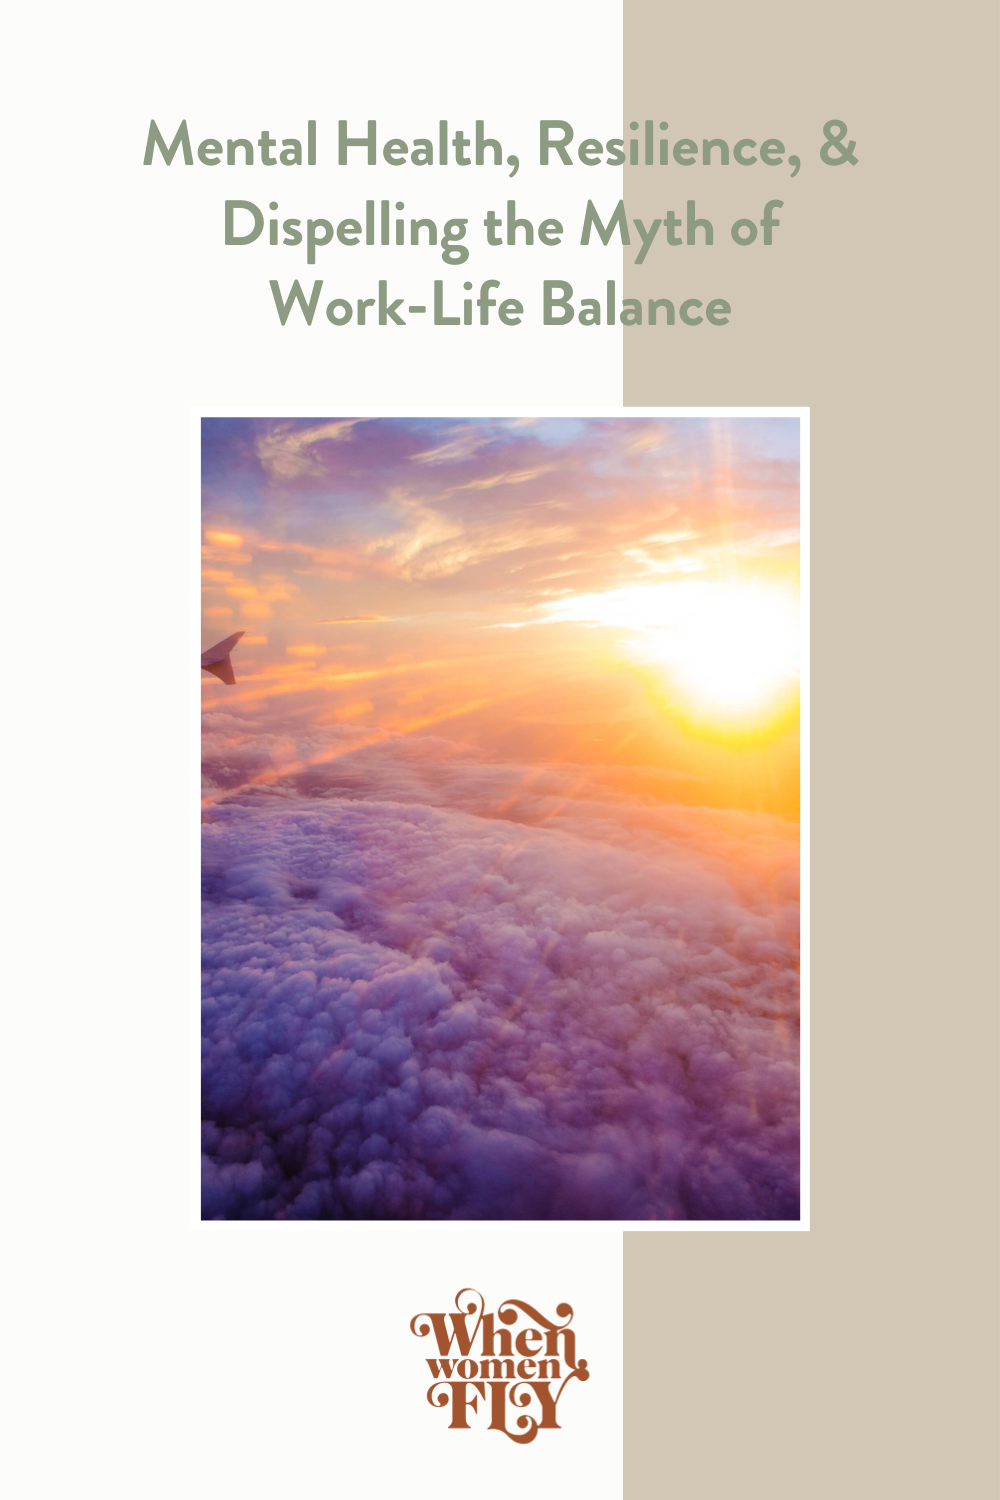 WWF Mental Health-Resilience-Work-Life Balance Myth 2.png